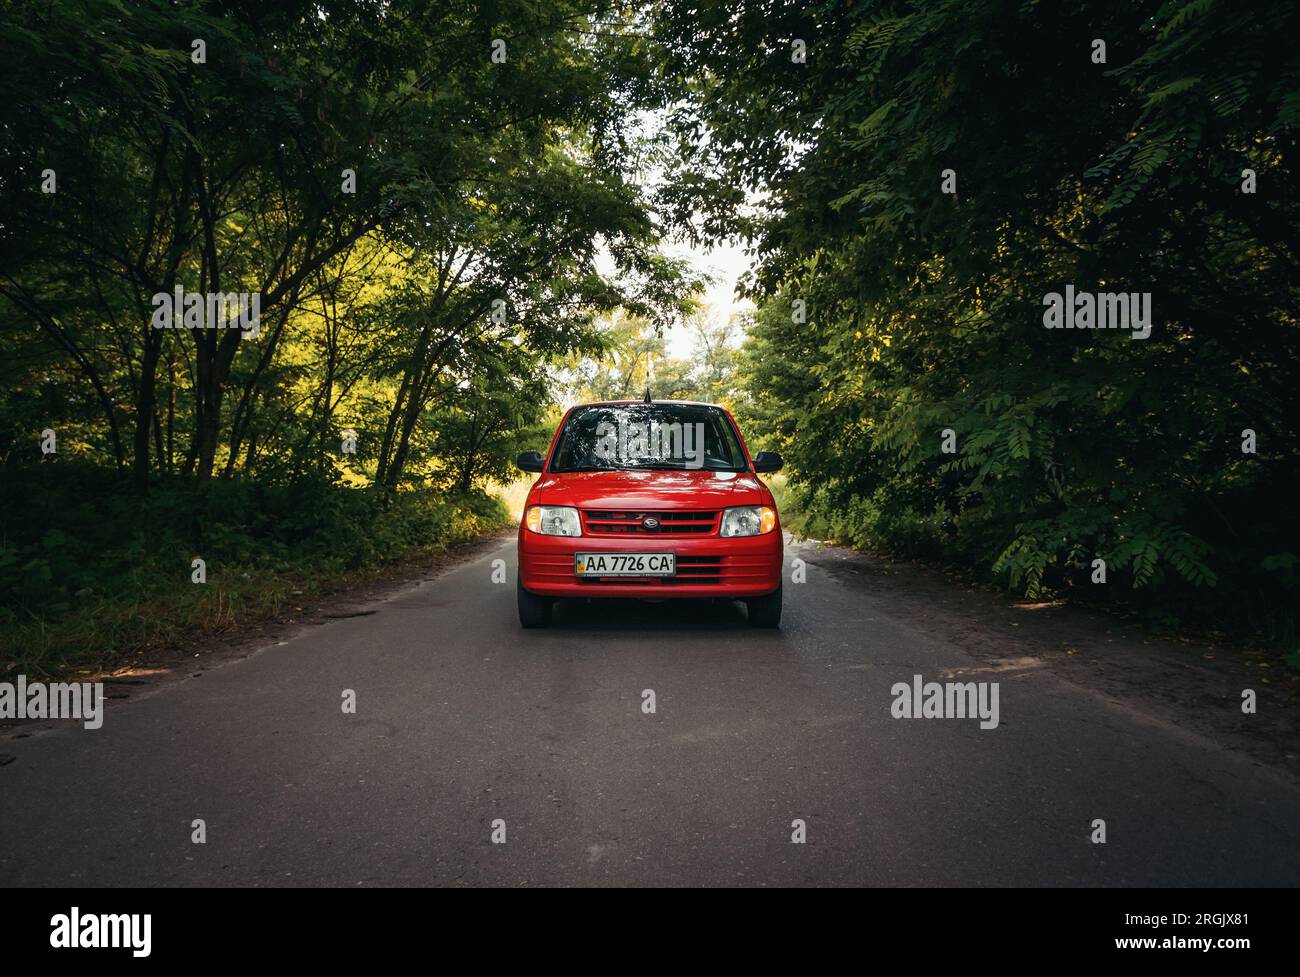 kei car Daihatsu mira L700 su una strada nella foresta decidua. Vista frontale di una piccola auto rossa che attraversa il bosco. Foto Stock